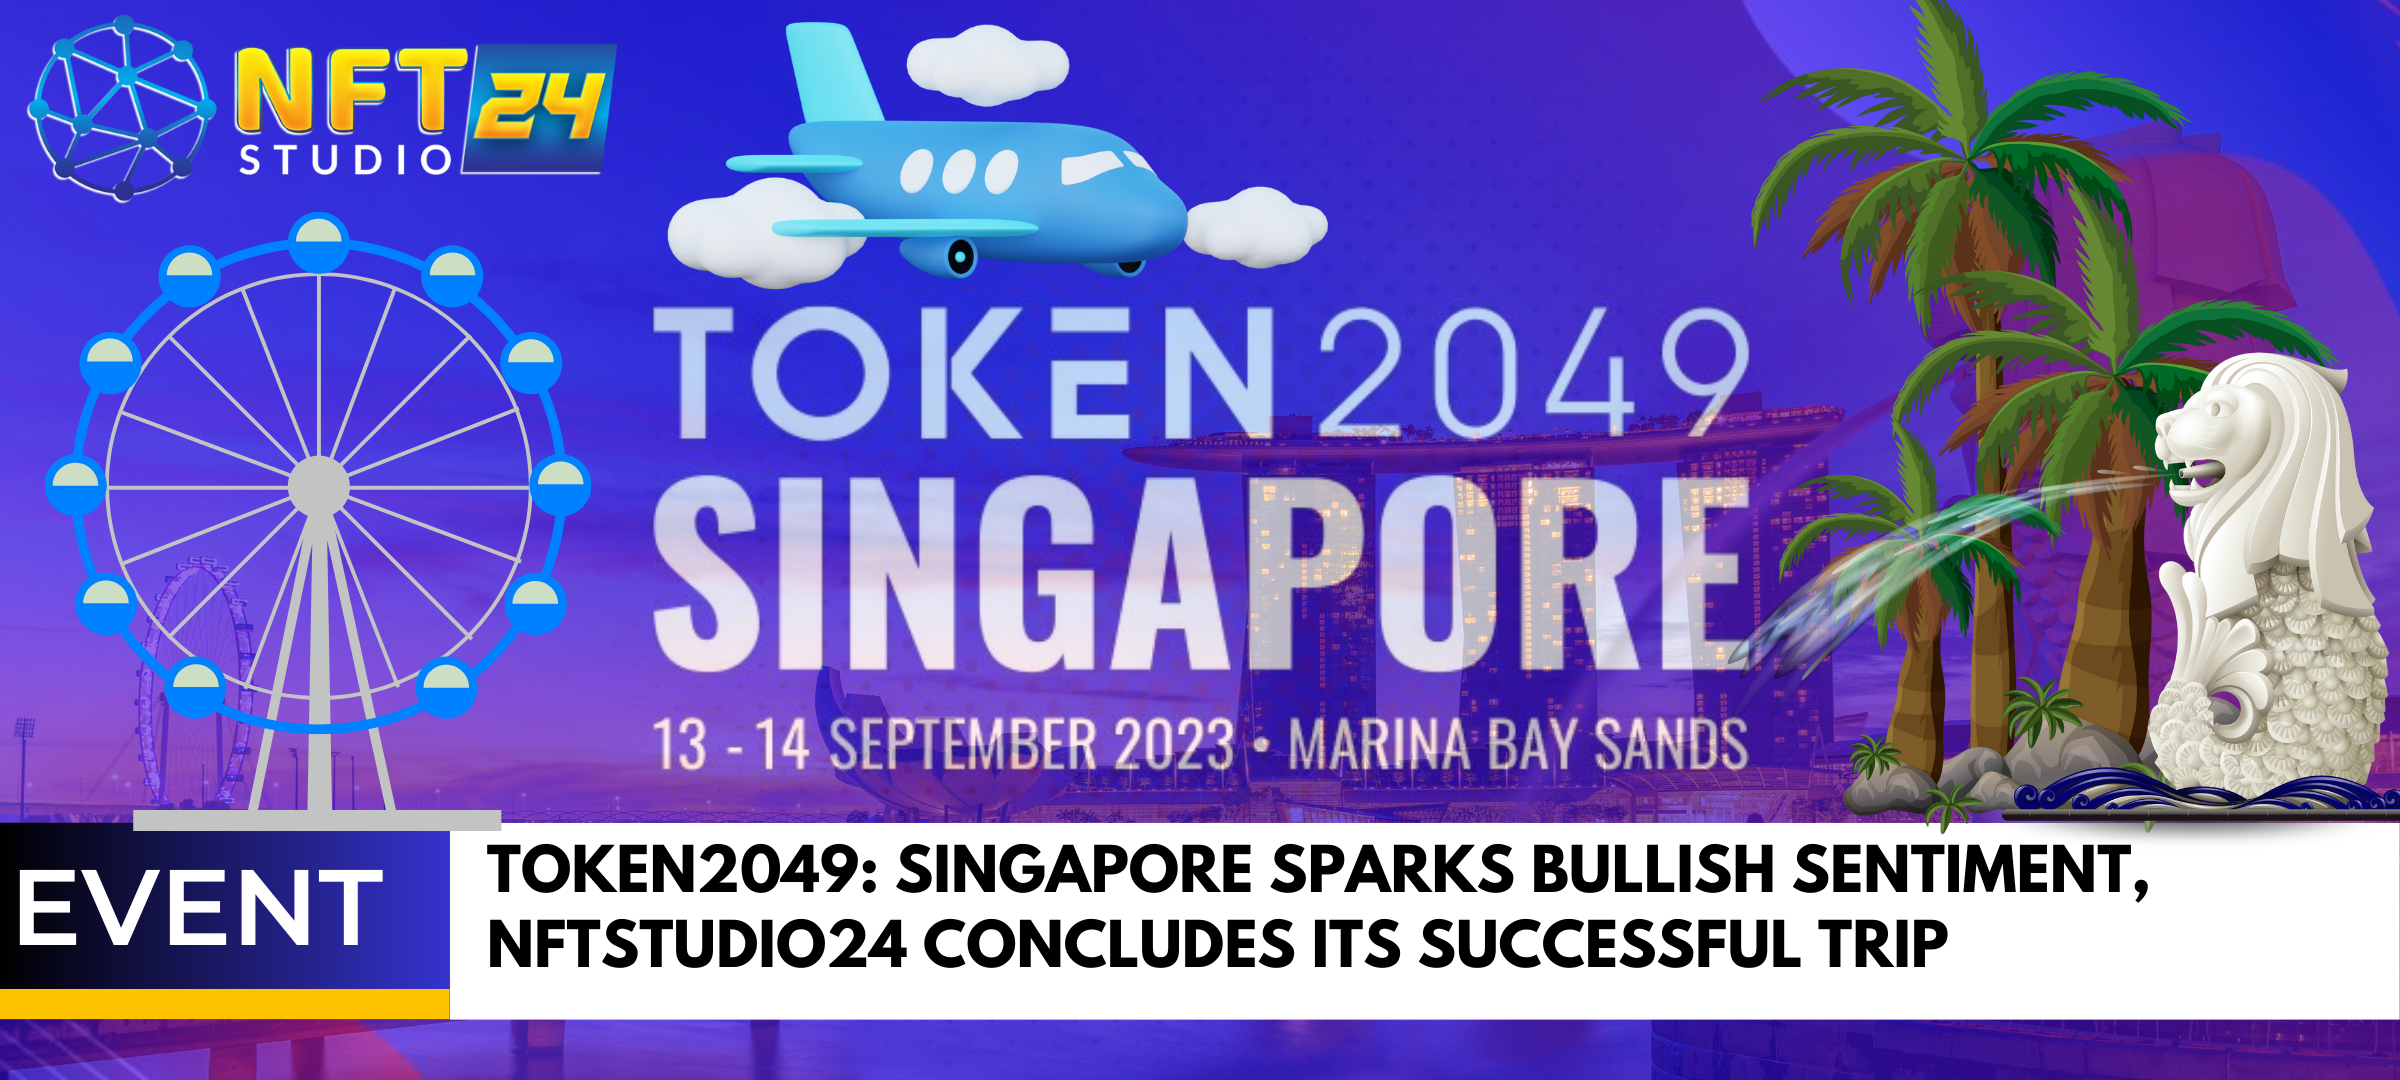 TOKEN2049 Singapore Sparks Bullish Sentiment NFTStudio24 Concludes its Successful Trip